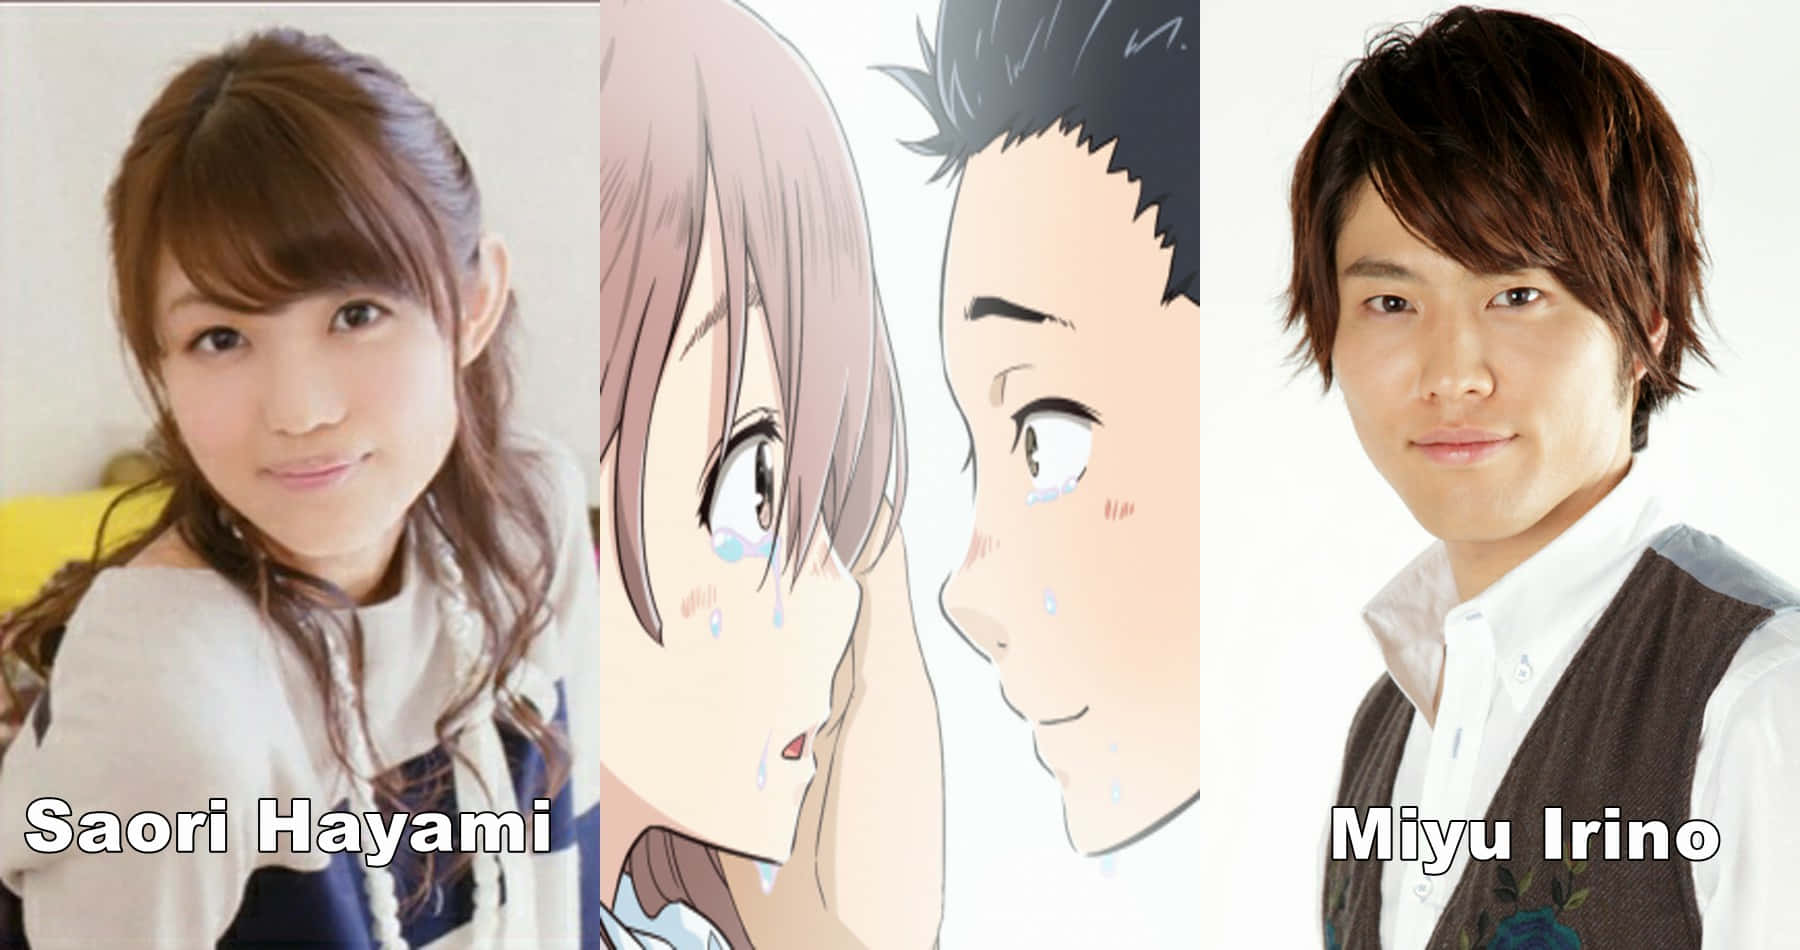 En gruppe af anime-karakterer med deres ansigter på tapetet